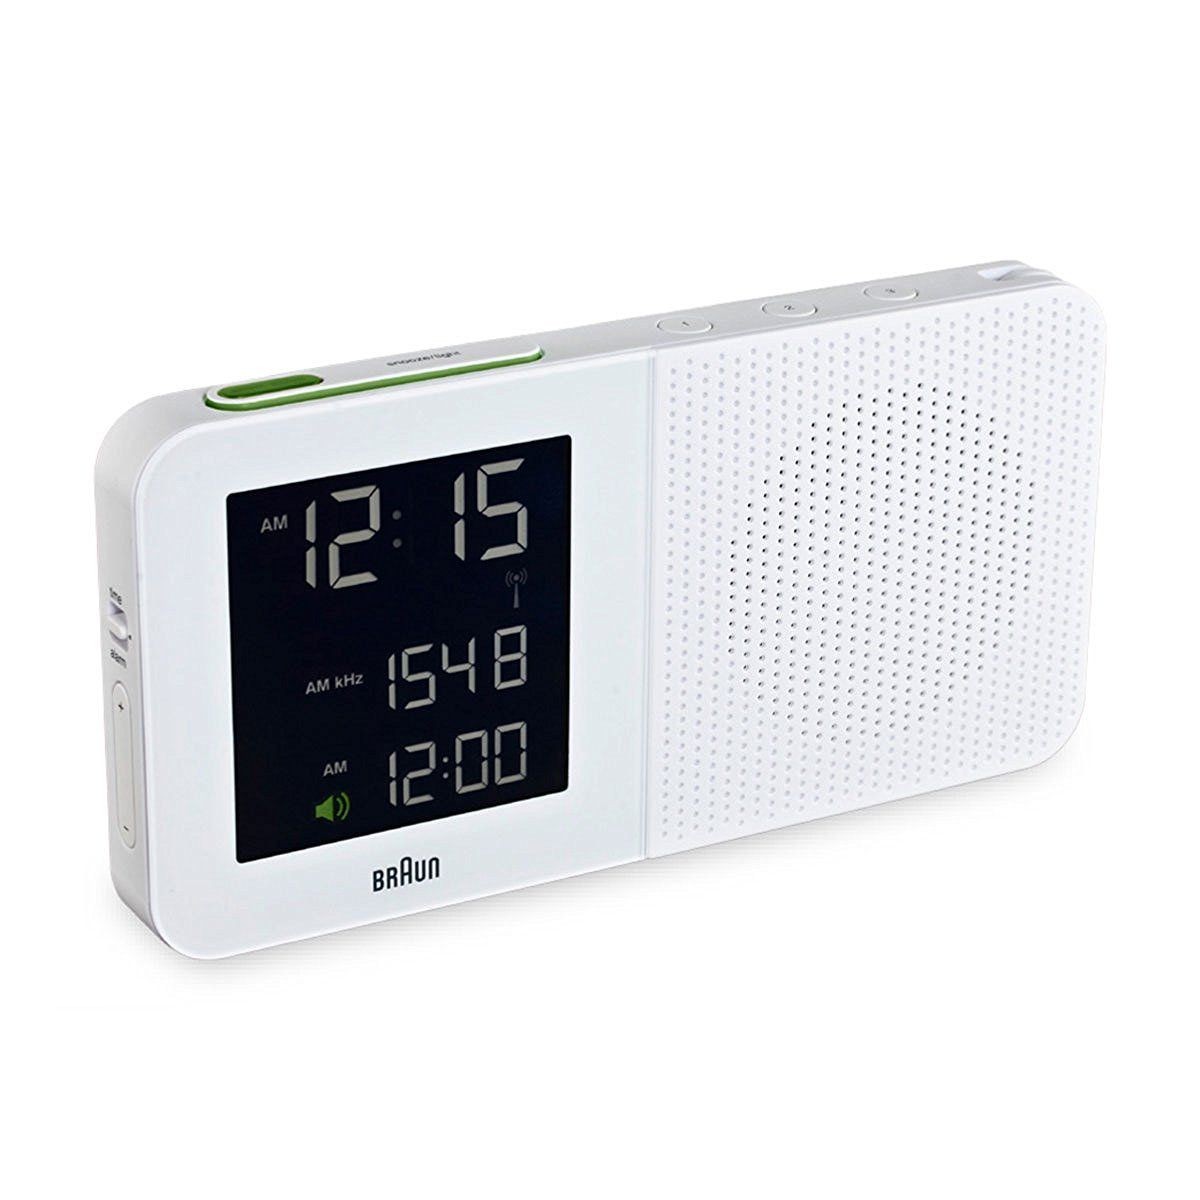 Braun Digital AM/FM Radio Alarm Clock - BNC-10 - White with AC Adaptor